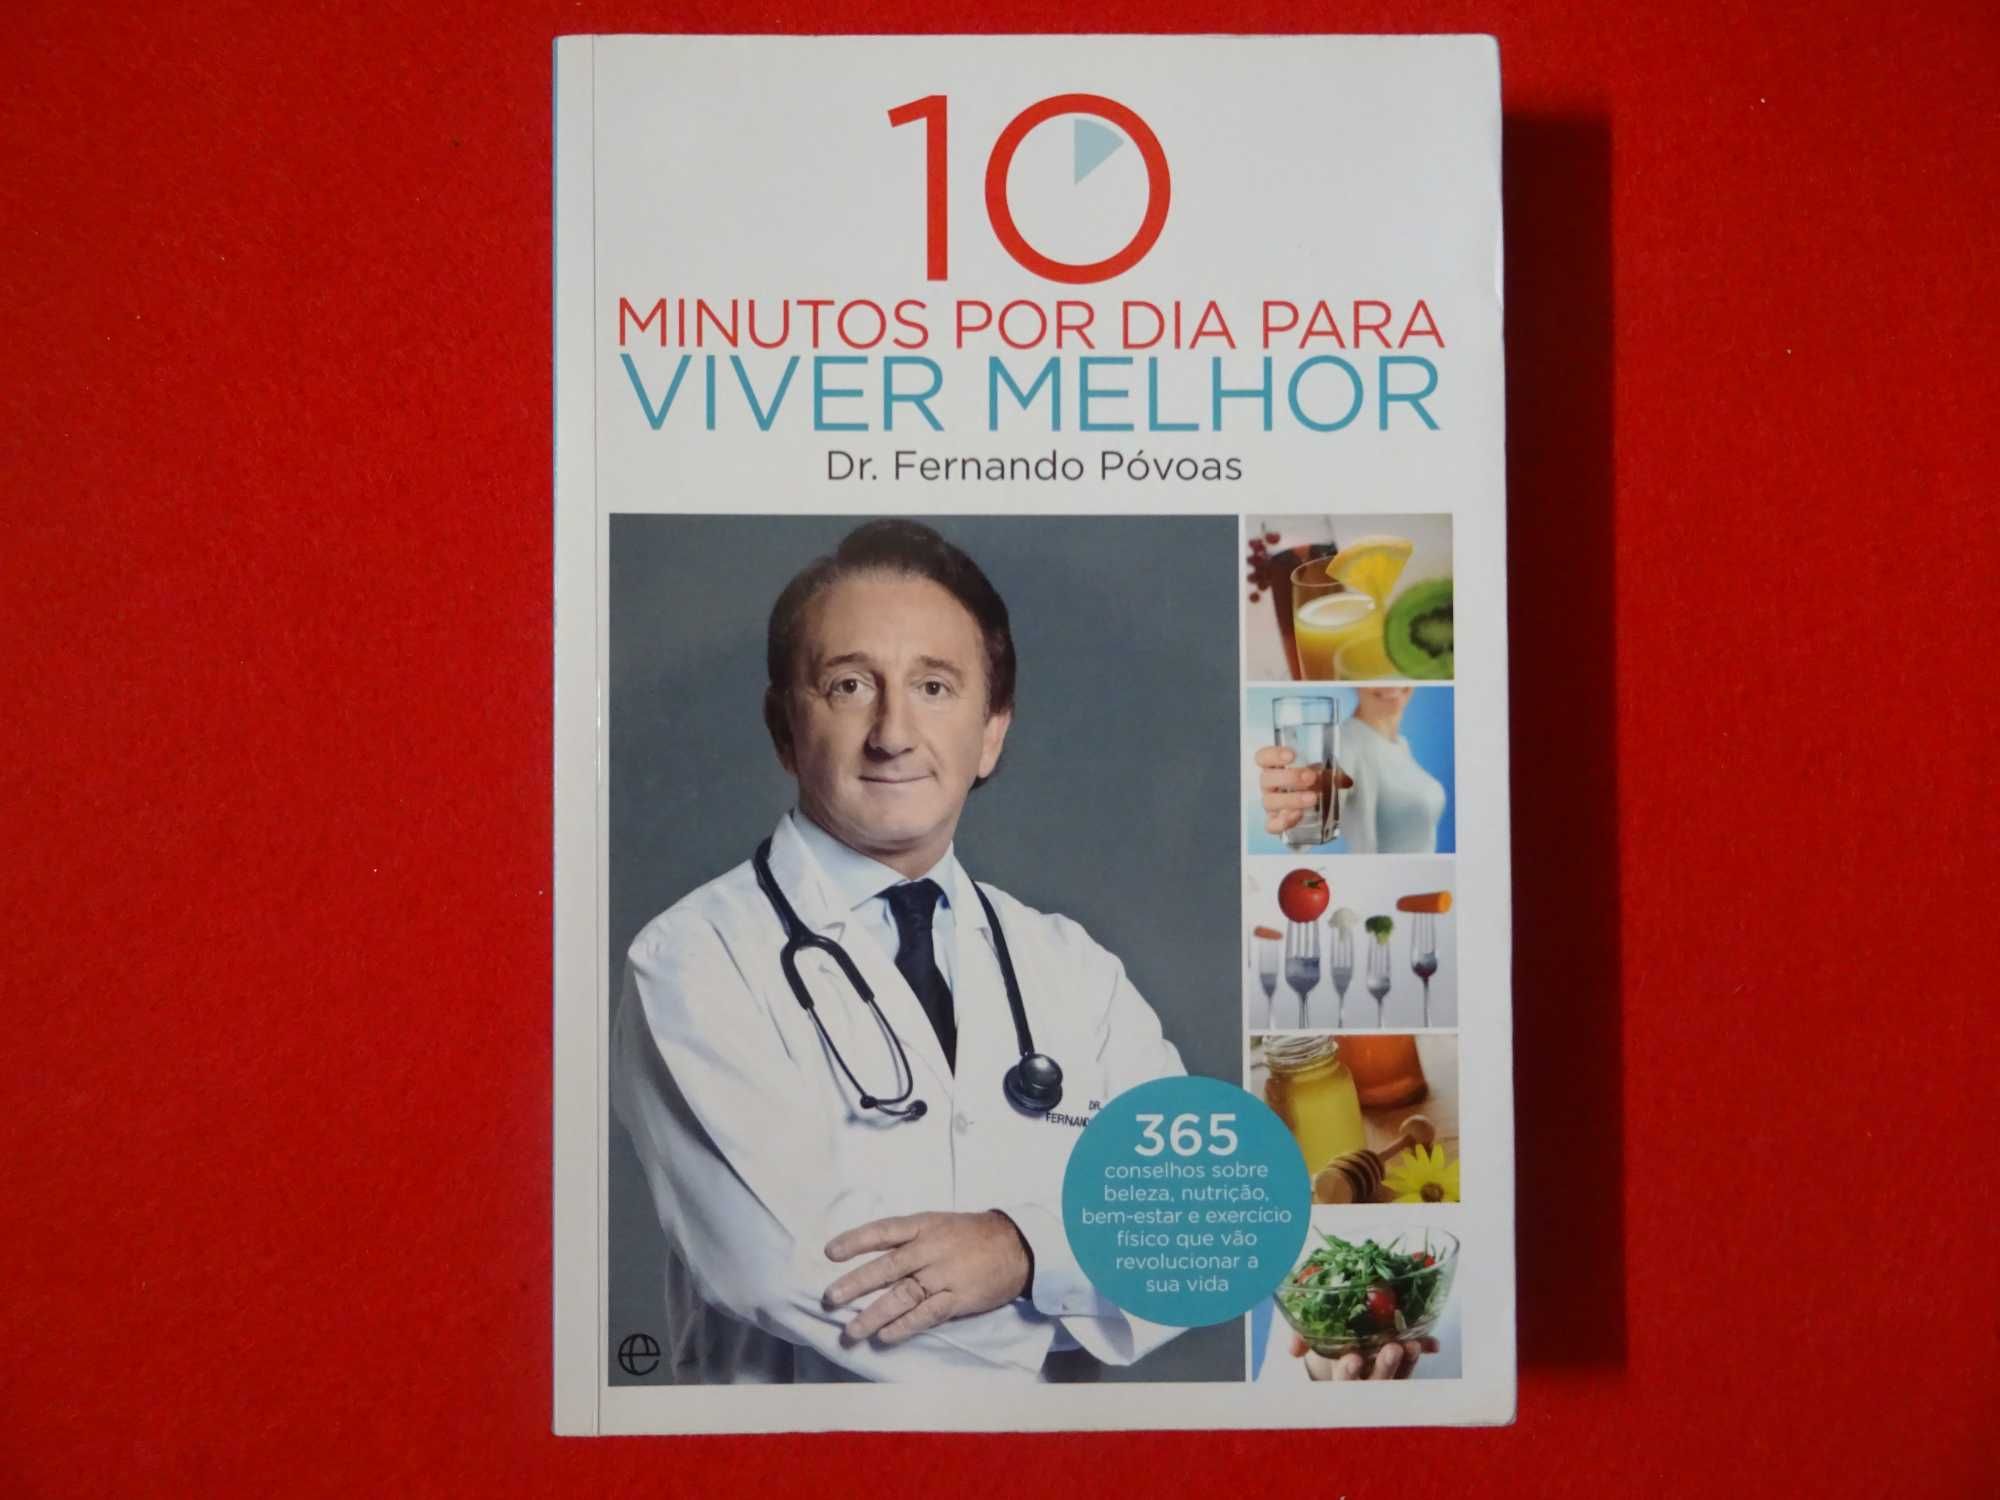 10 minutos por dia para viver melhor de Dr. Fernando Póvoas